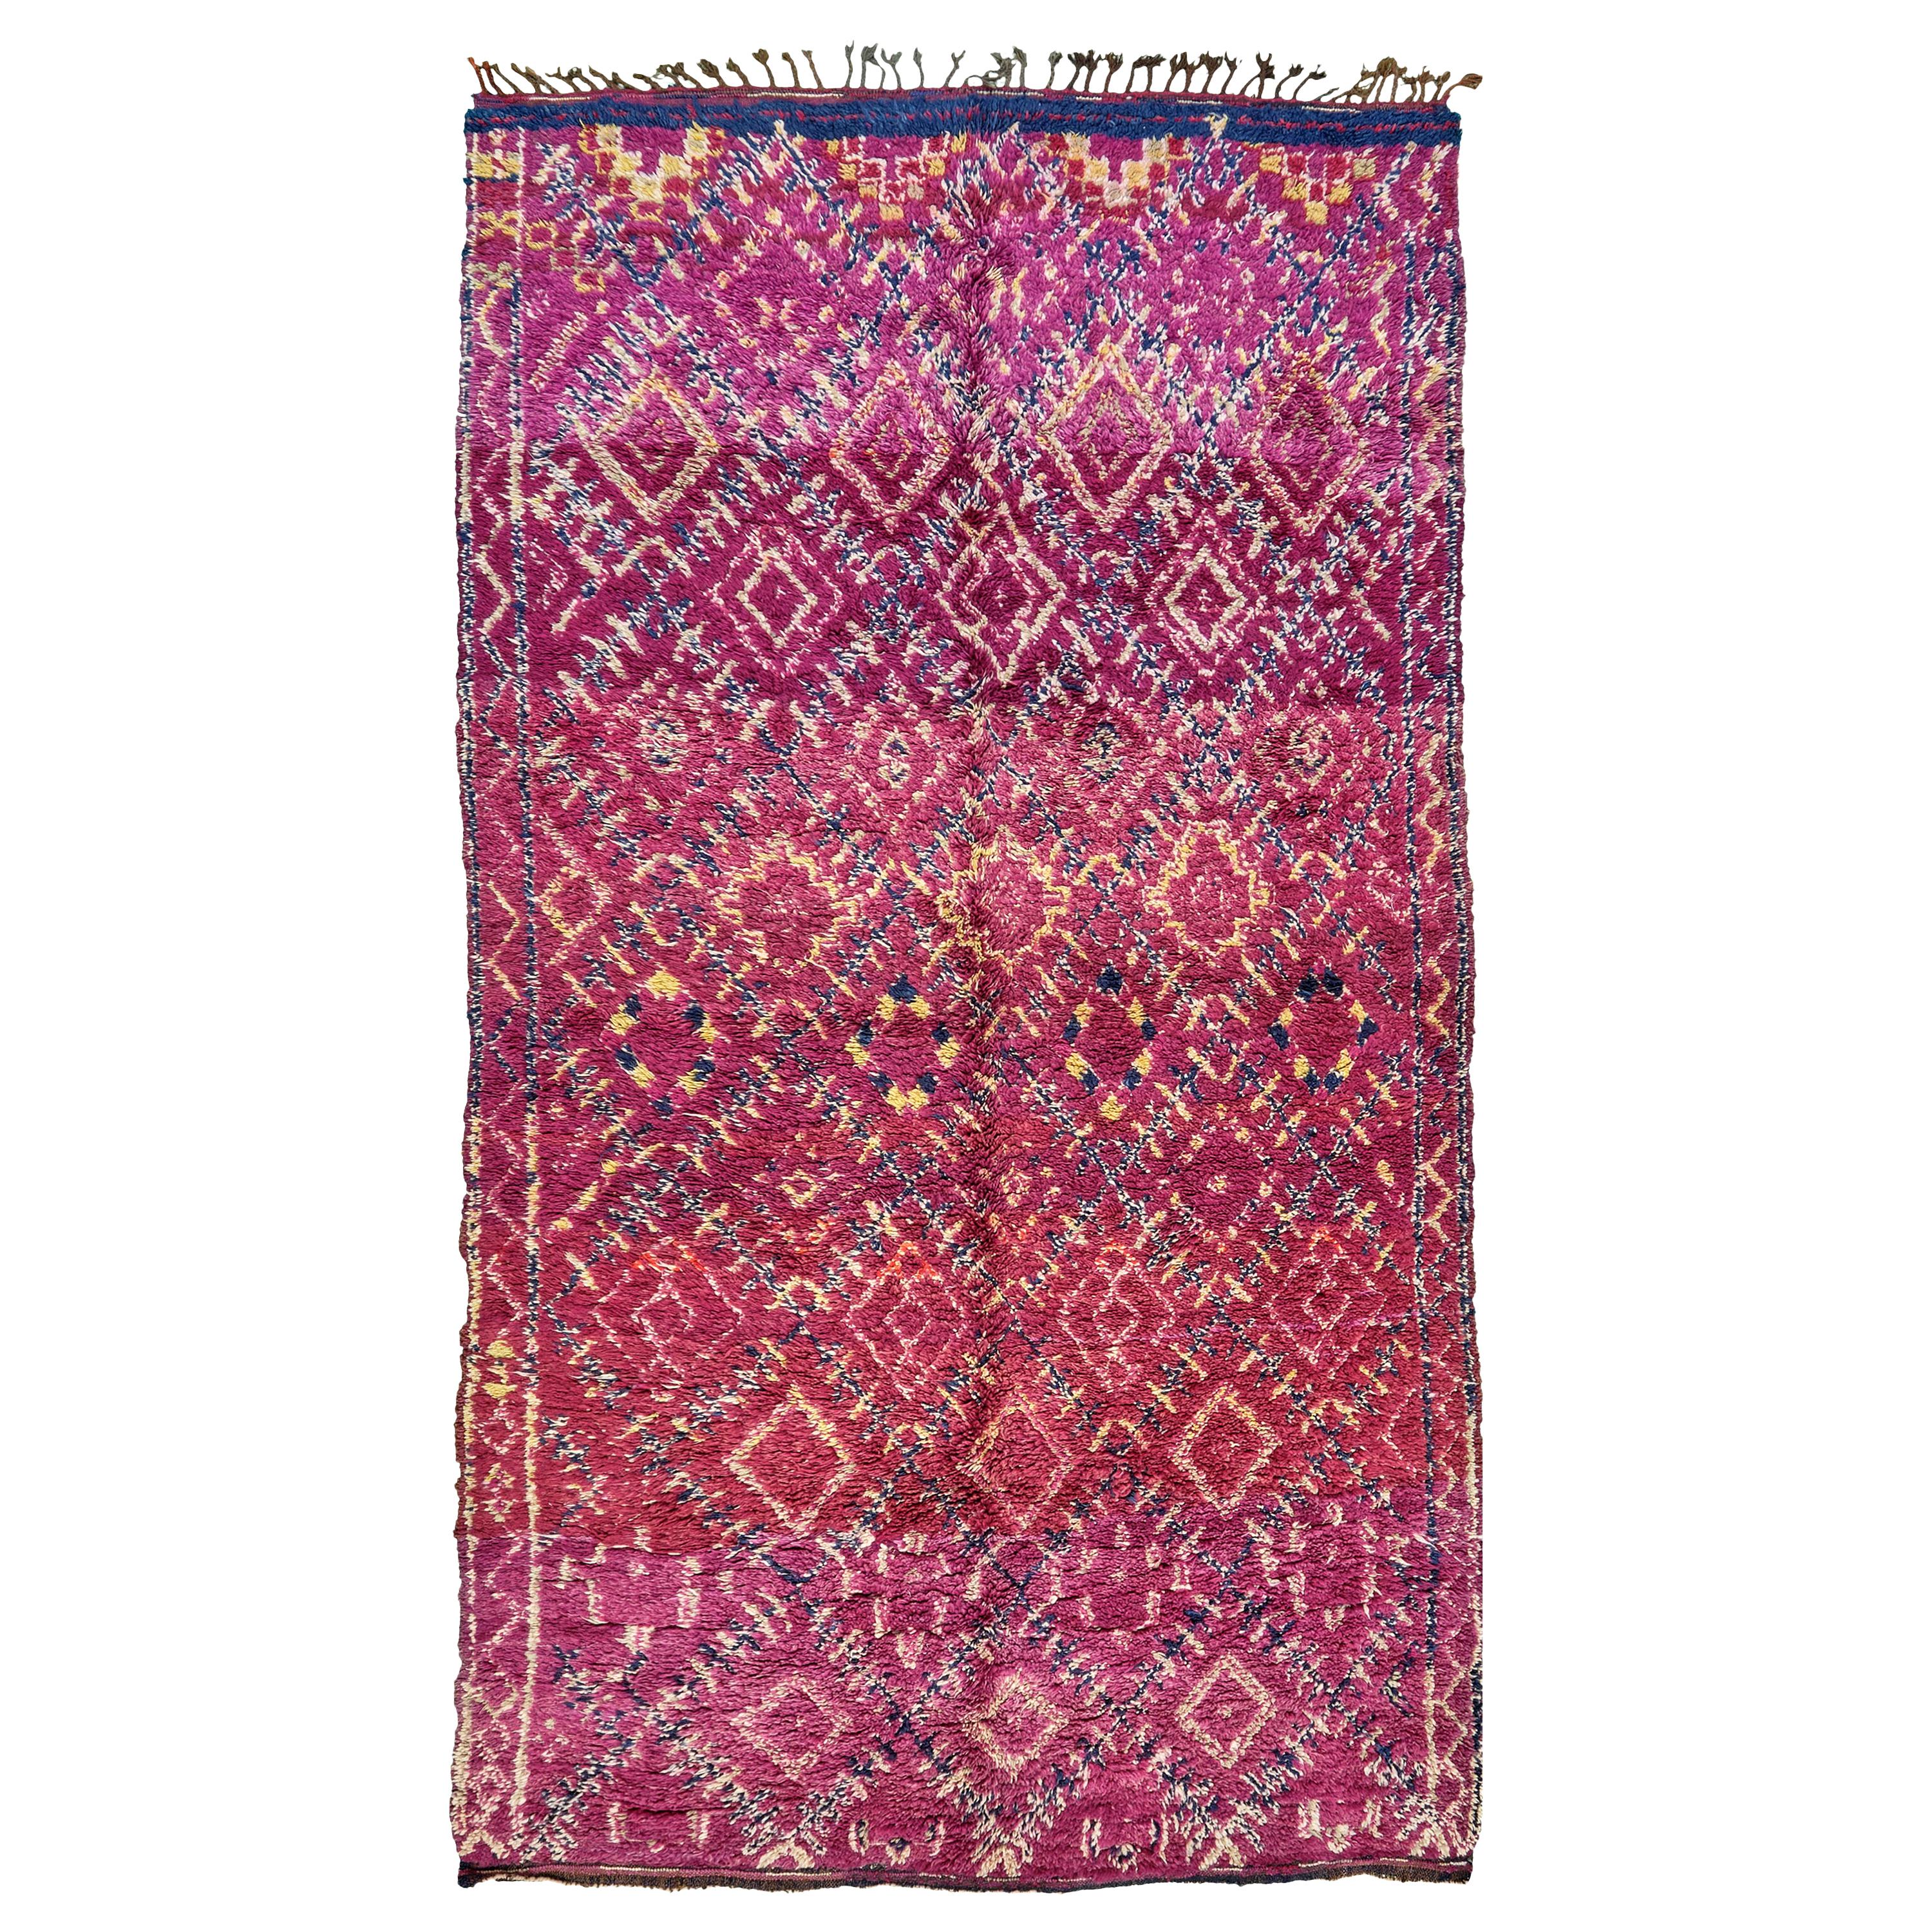 Marokkanischer Teppich aus der Atlas-Kollektion mit Azilal-Stamme